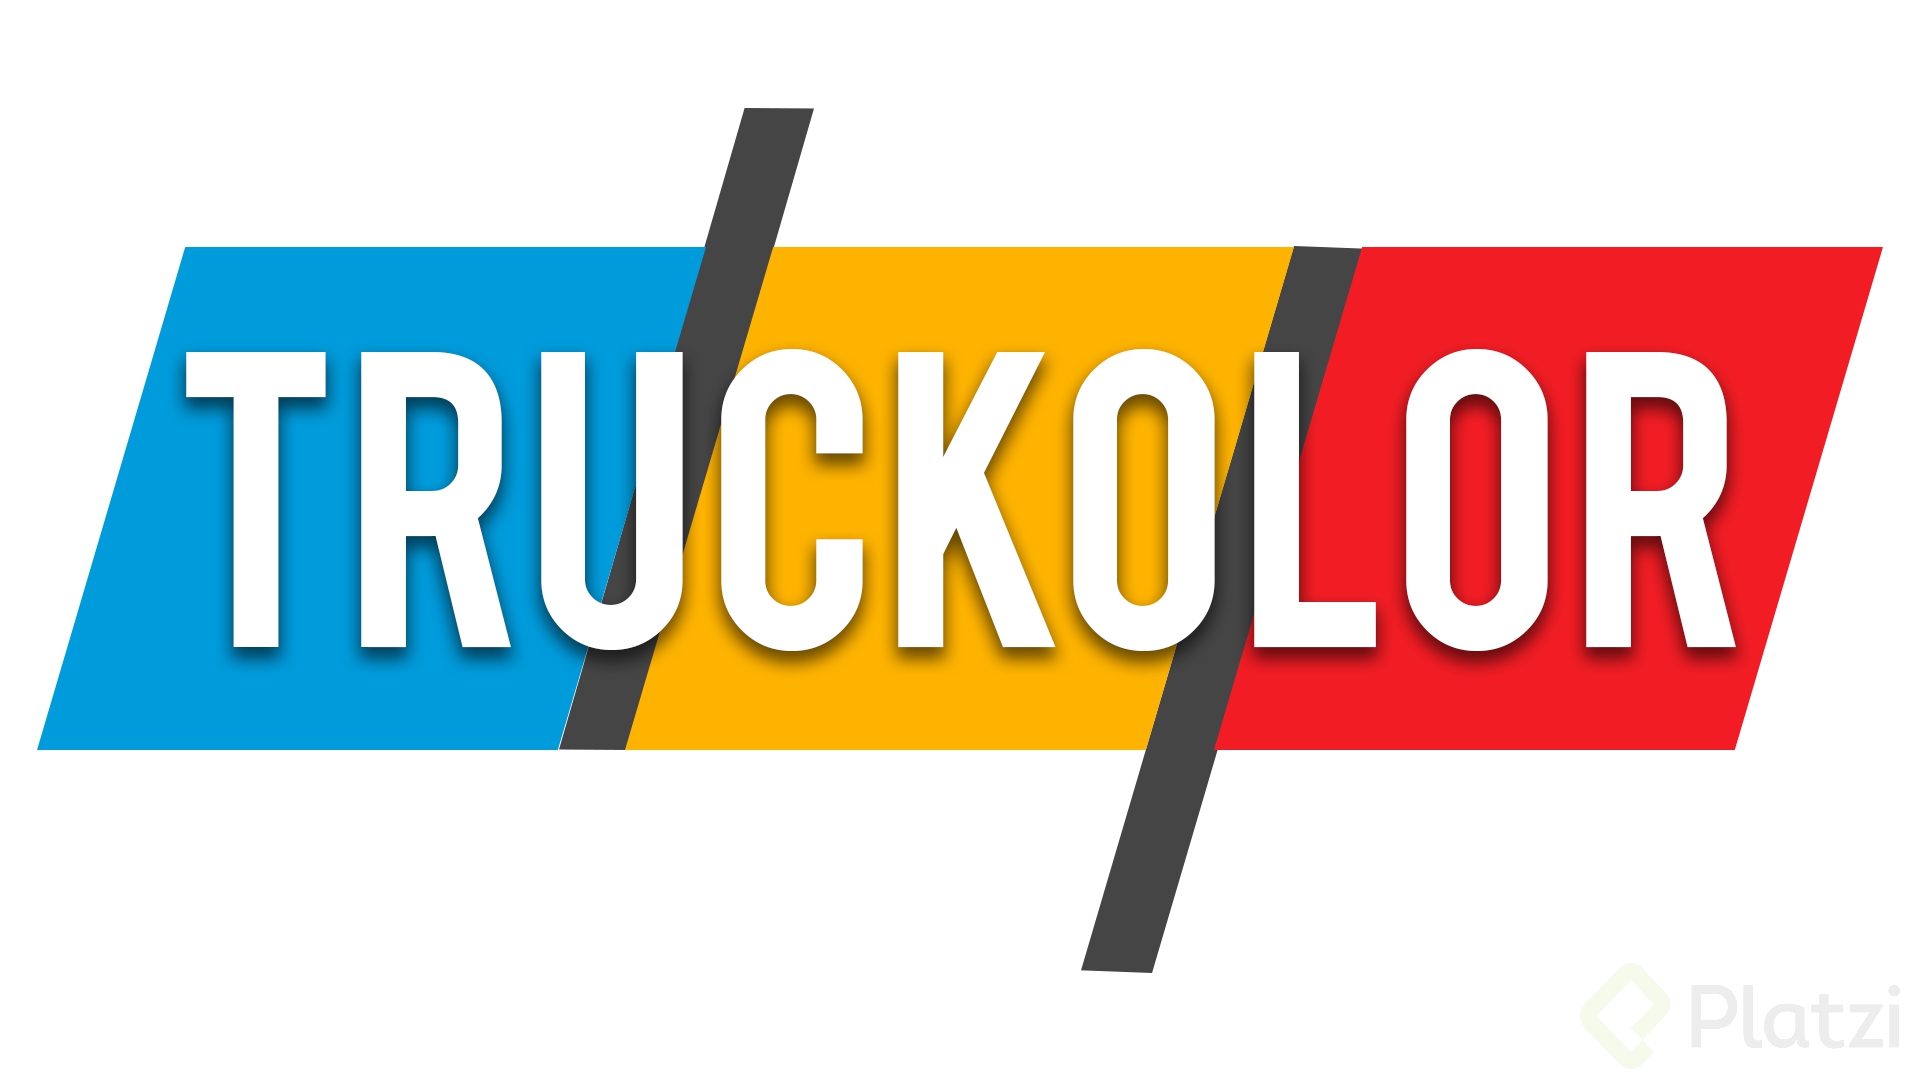 truckolor logo png.png